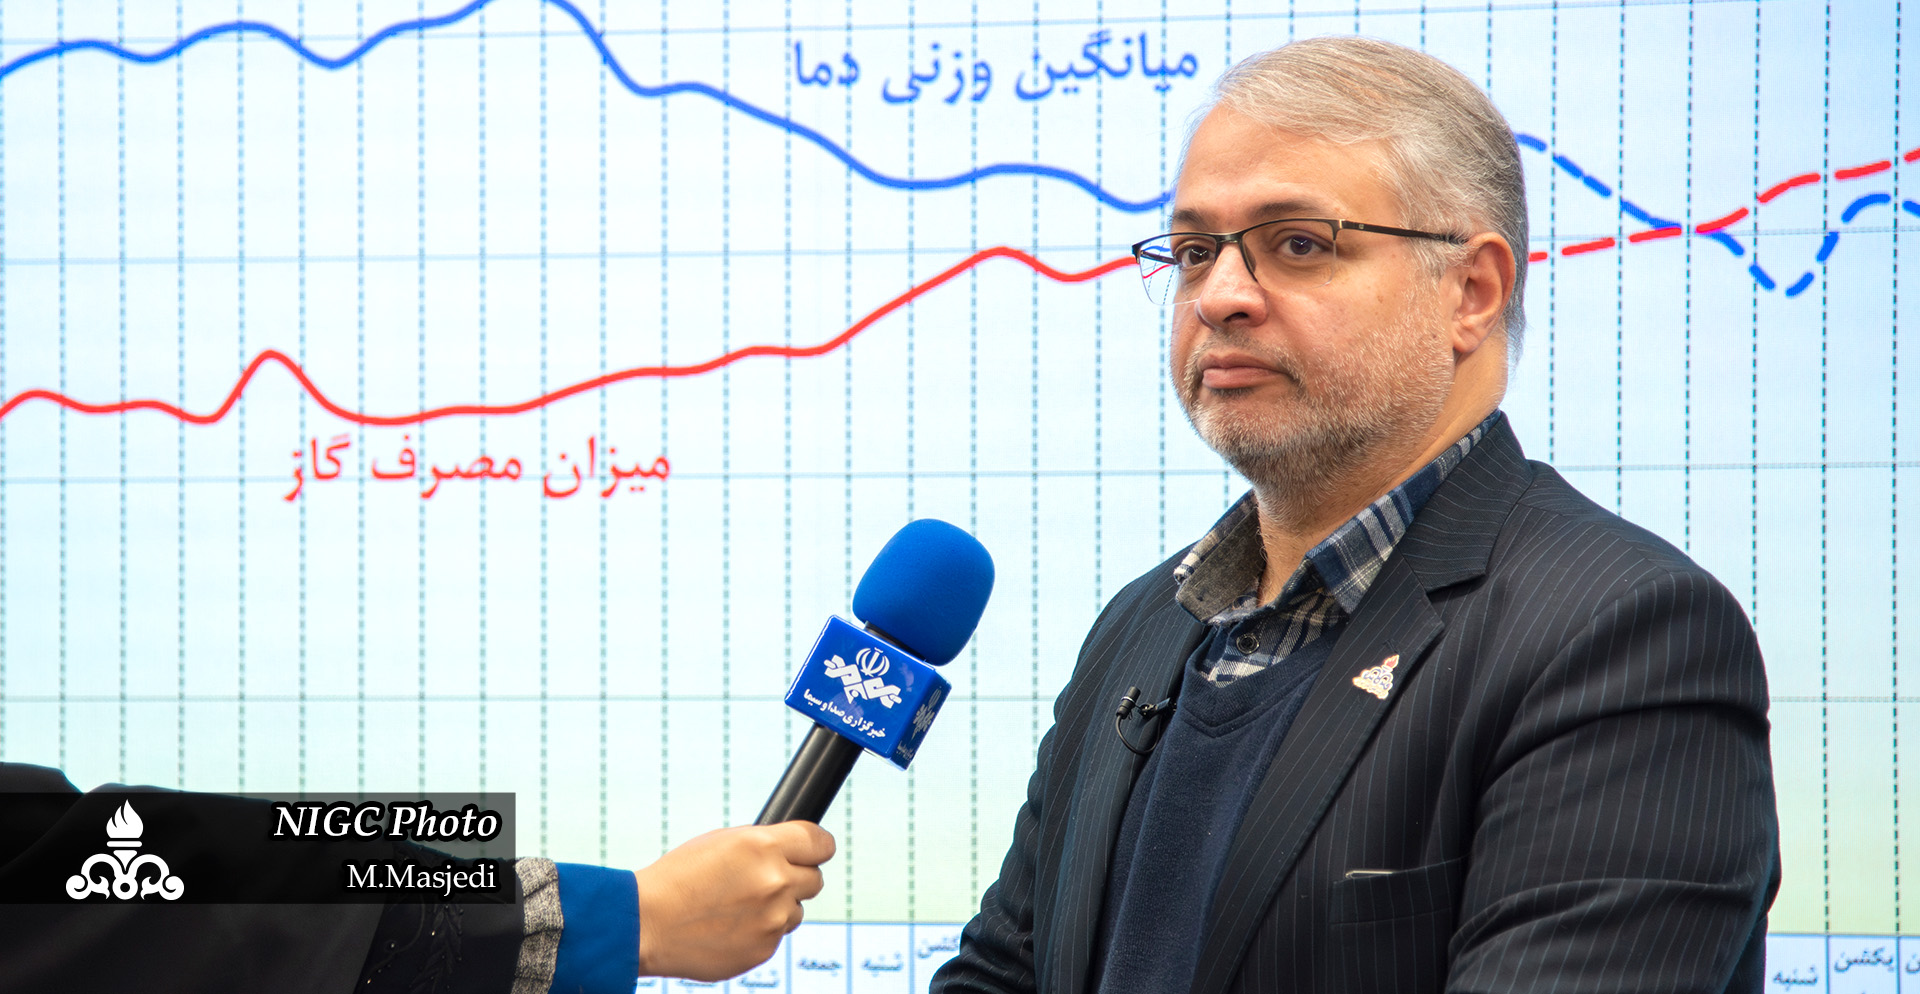 مدیر دیسپچینگ شرکت ملی گاز ایران خبر داد؛ ثبت بیشترین میزان مصرف گاز از ابتدای آذرماه تاکنون